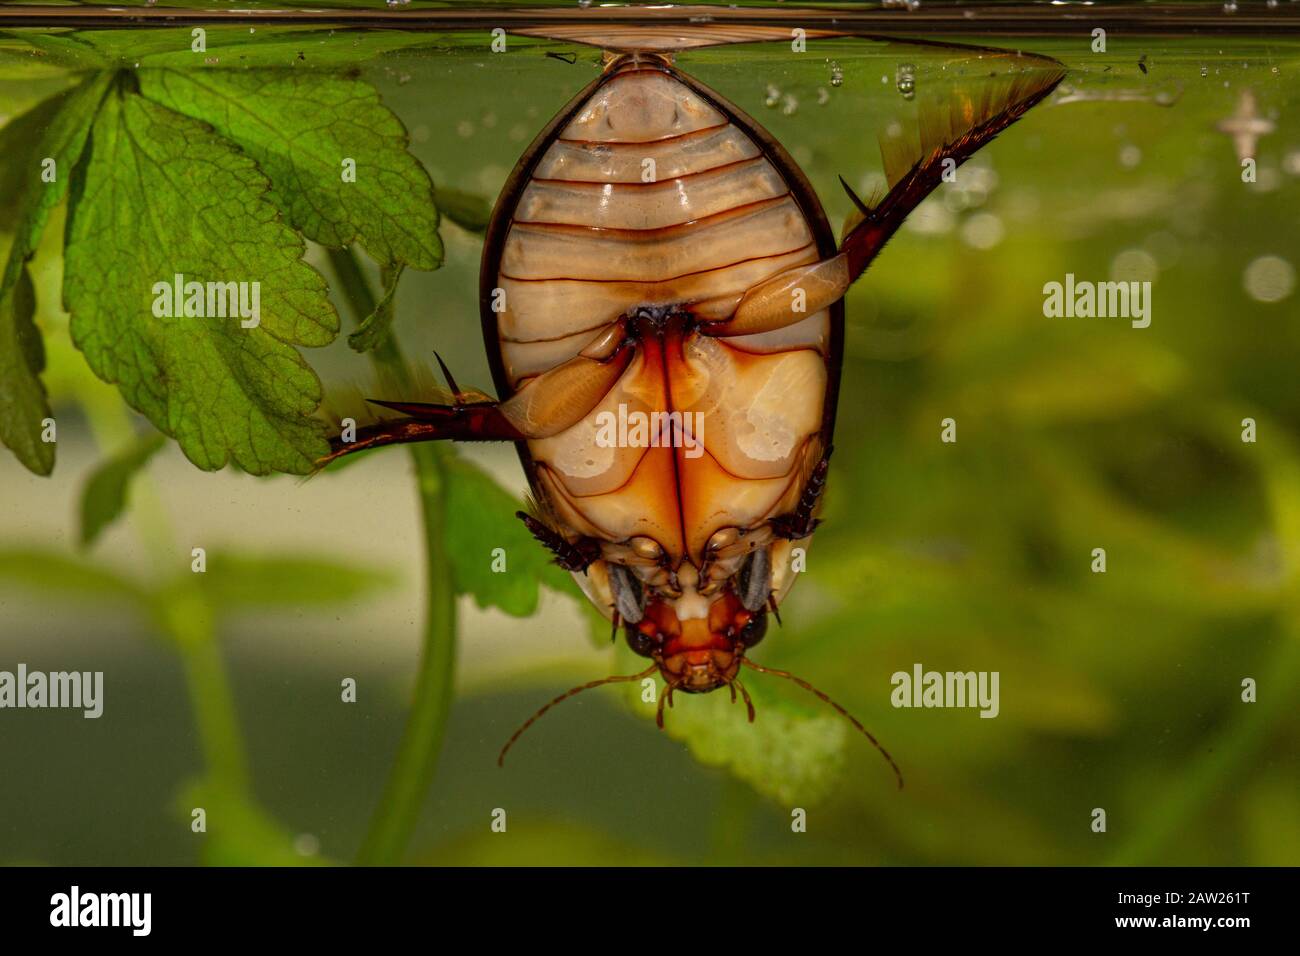 Plongée Beetle (Cybister lateralimarginalis, Scaphinectes lateralimarginalis), homme prenant un souffle à la surface de l'eau, Allemagne, Bavière Banque D'Images